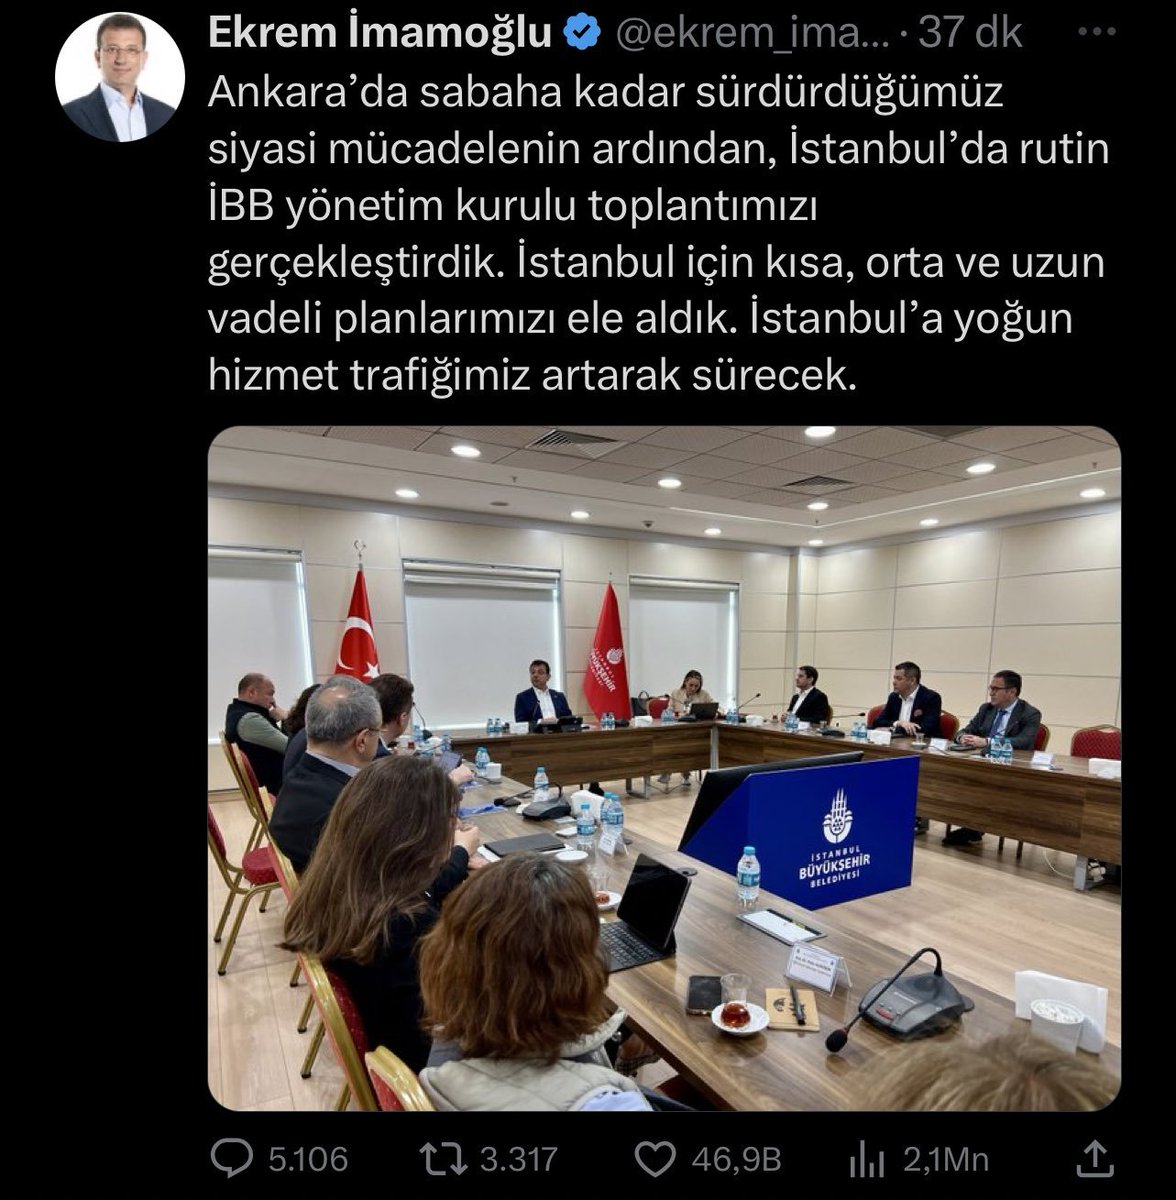 İBB Başkanı Ekrem İmamoğlu görev yaptığı belediyeye dönme kararı aldı.